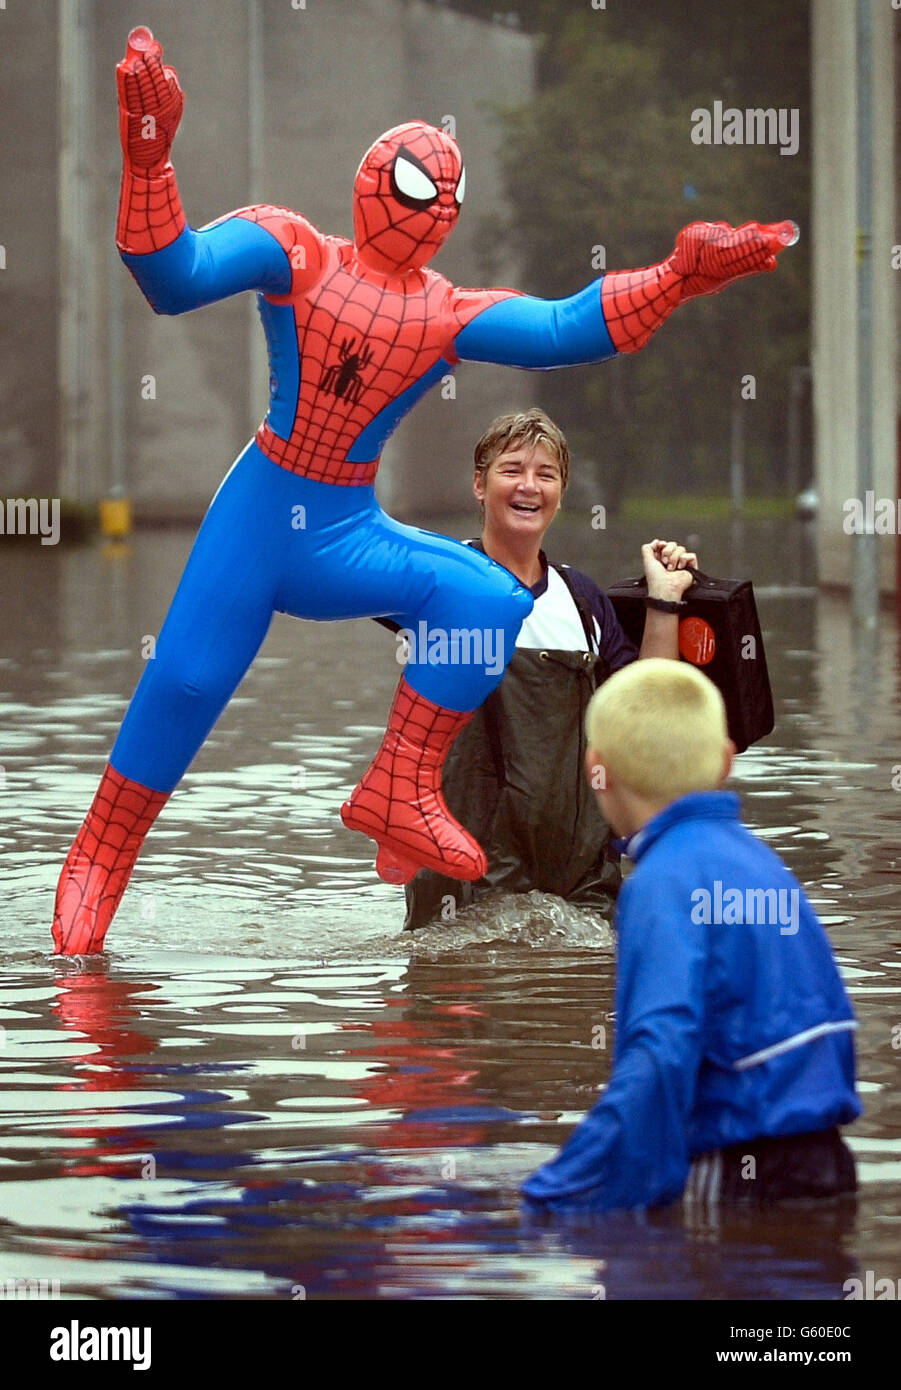 La residente Allan no puede dejar de reír, ya que lleva una figura inflable  de Spiderman, una de sus muchas posesiones empapadas, desde su piso  inundado al otro lado de la calle